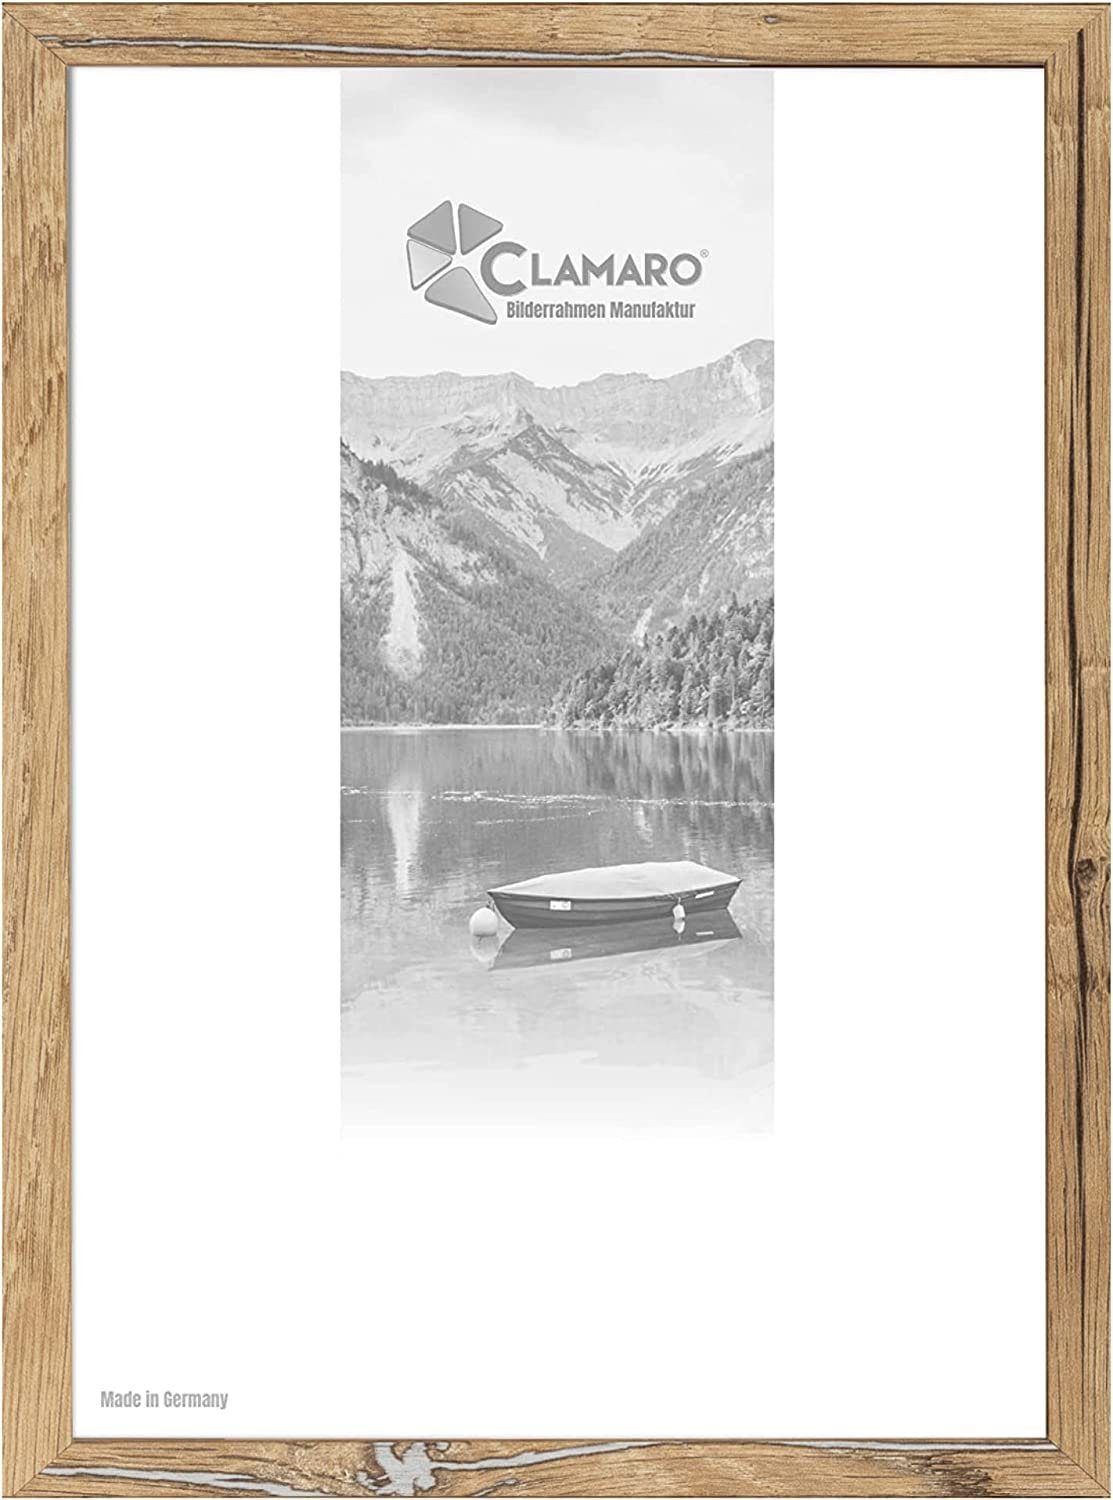 Clamaro Bilderrahmen Bilderrahmen Eiche Altholz CLAMARO Collage nach Maß FSC® Holz Modern eckig M3016 60x60 in Eiche Altholz